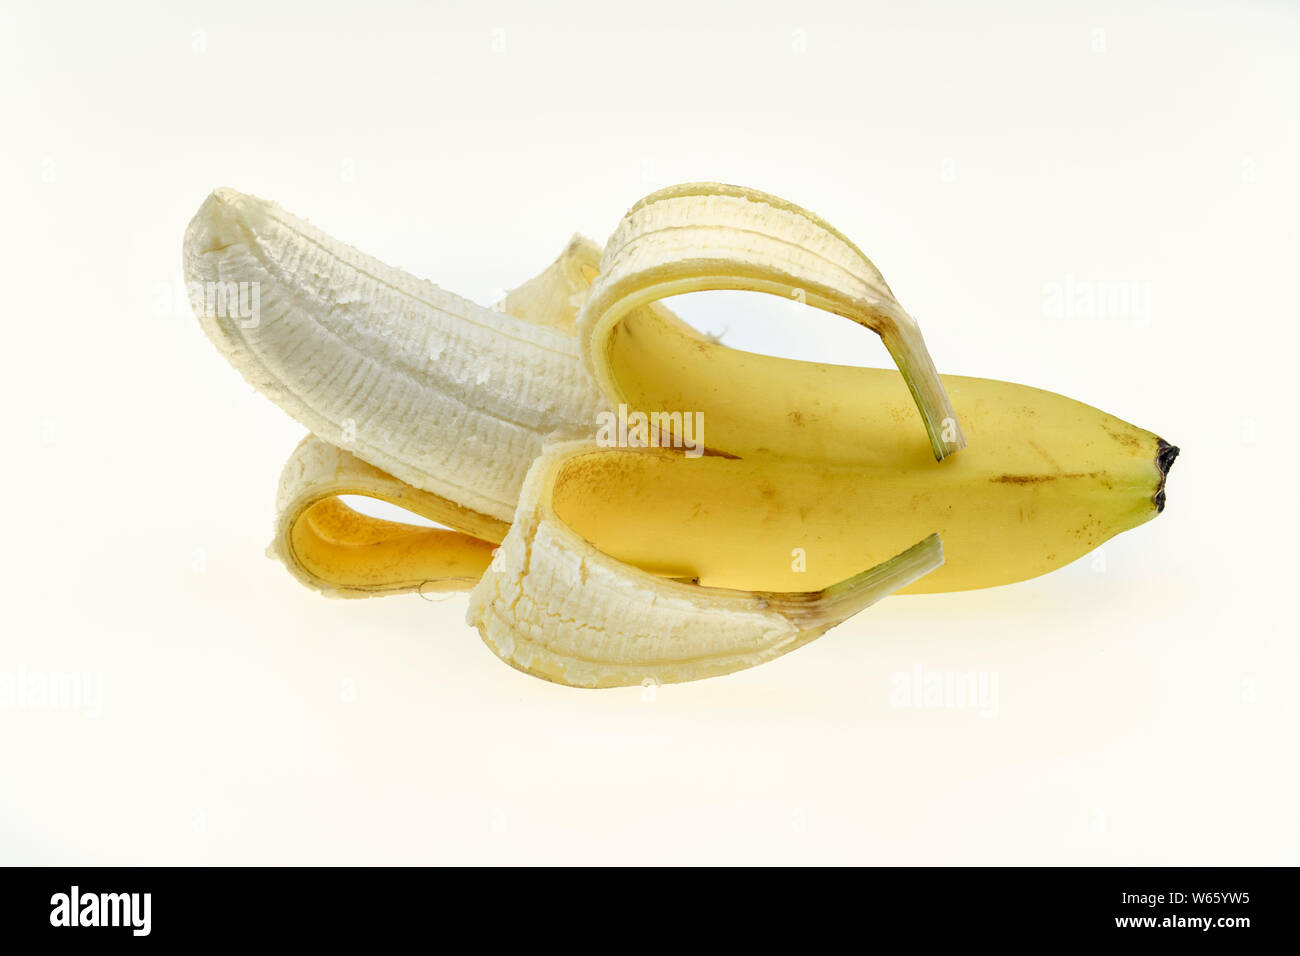 La banane, Musa spec., Banque D'Images